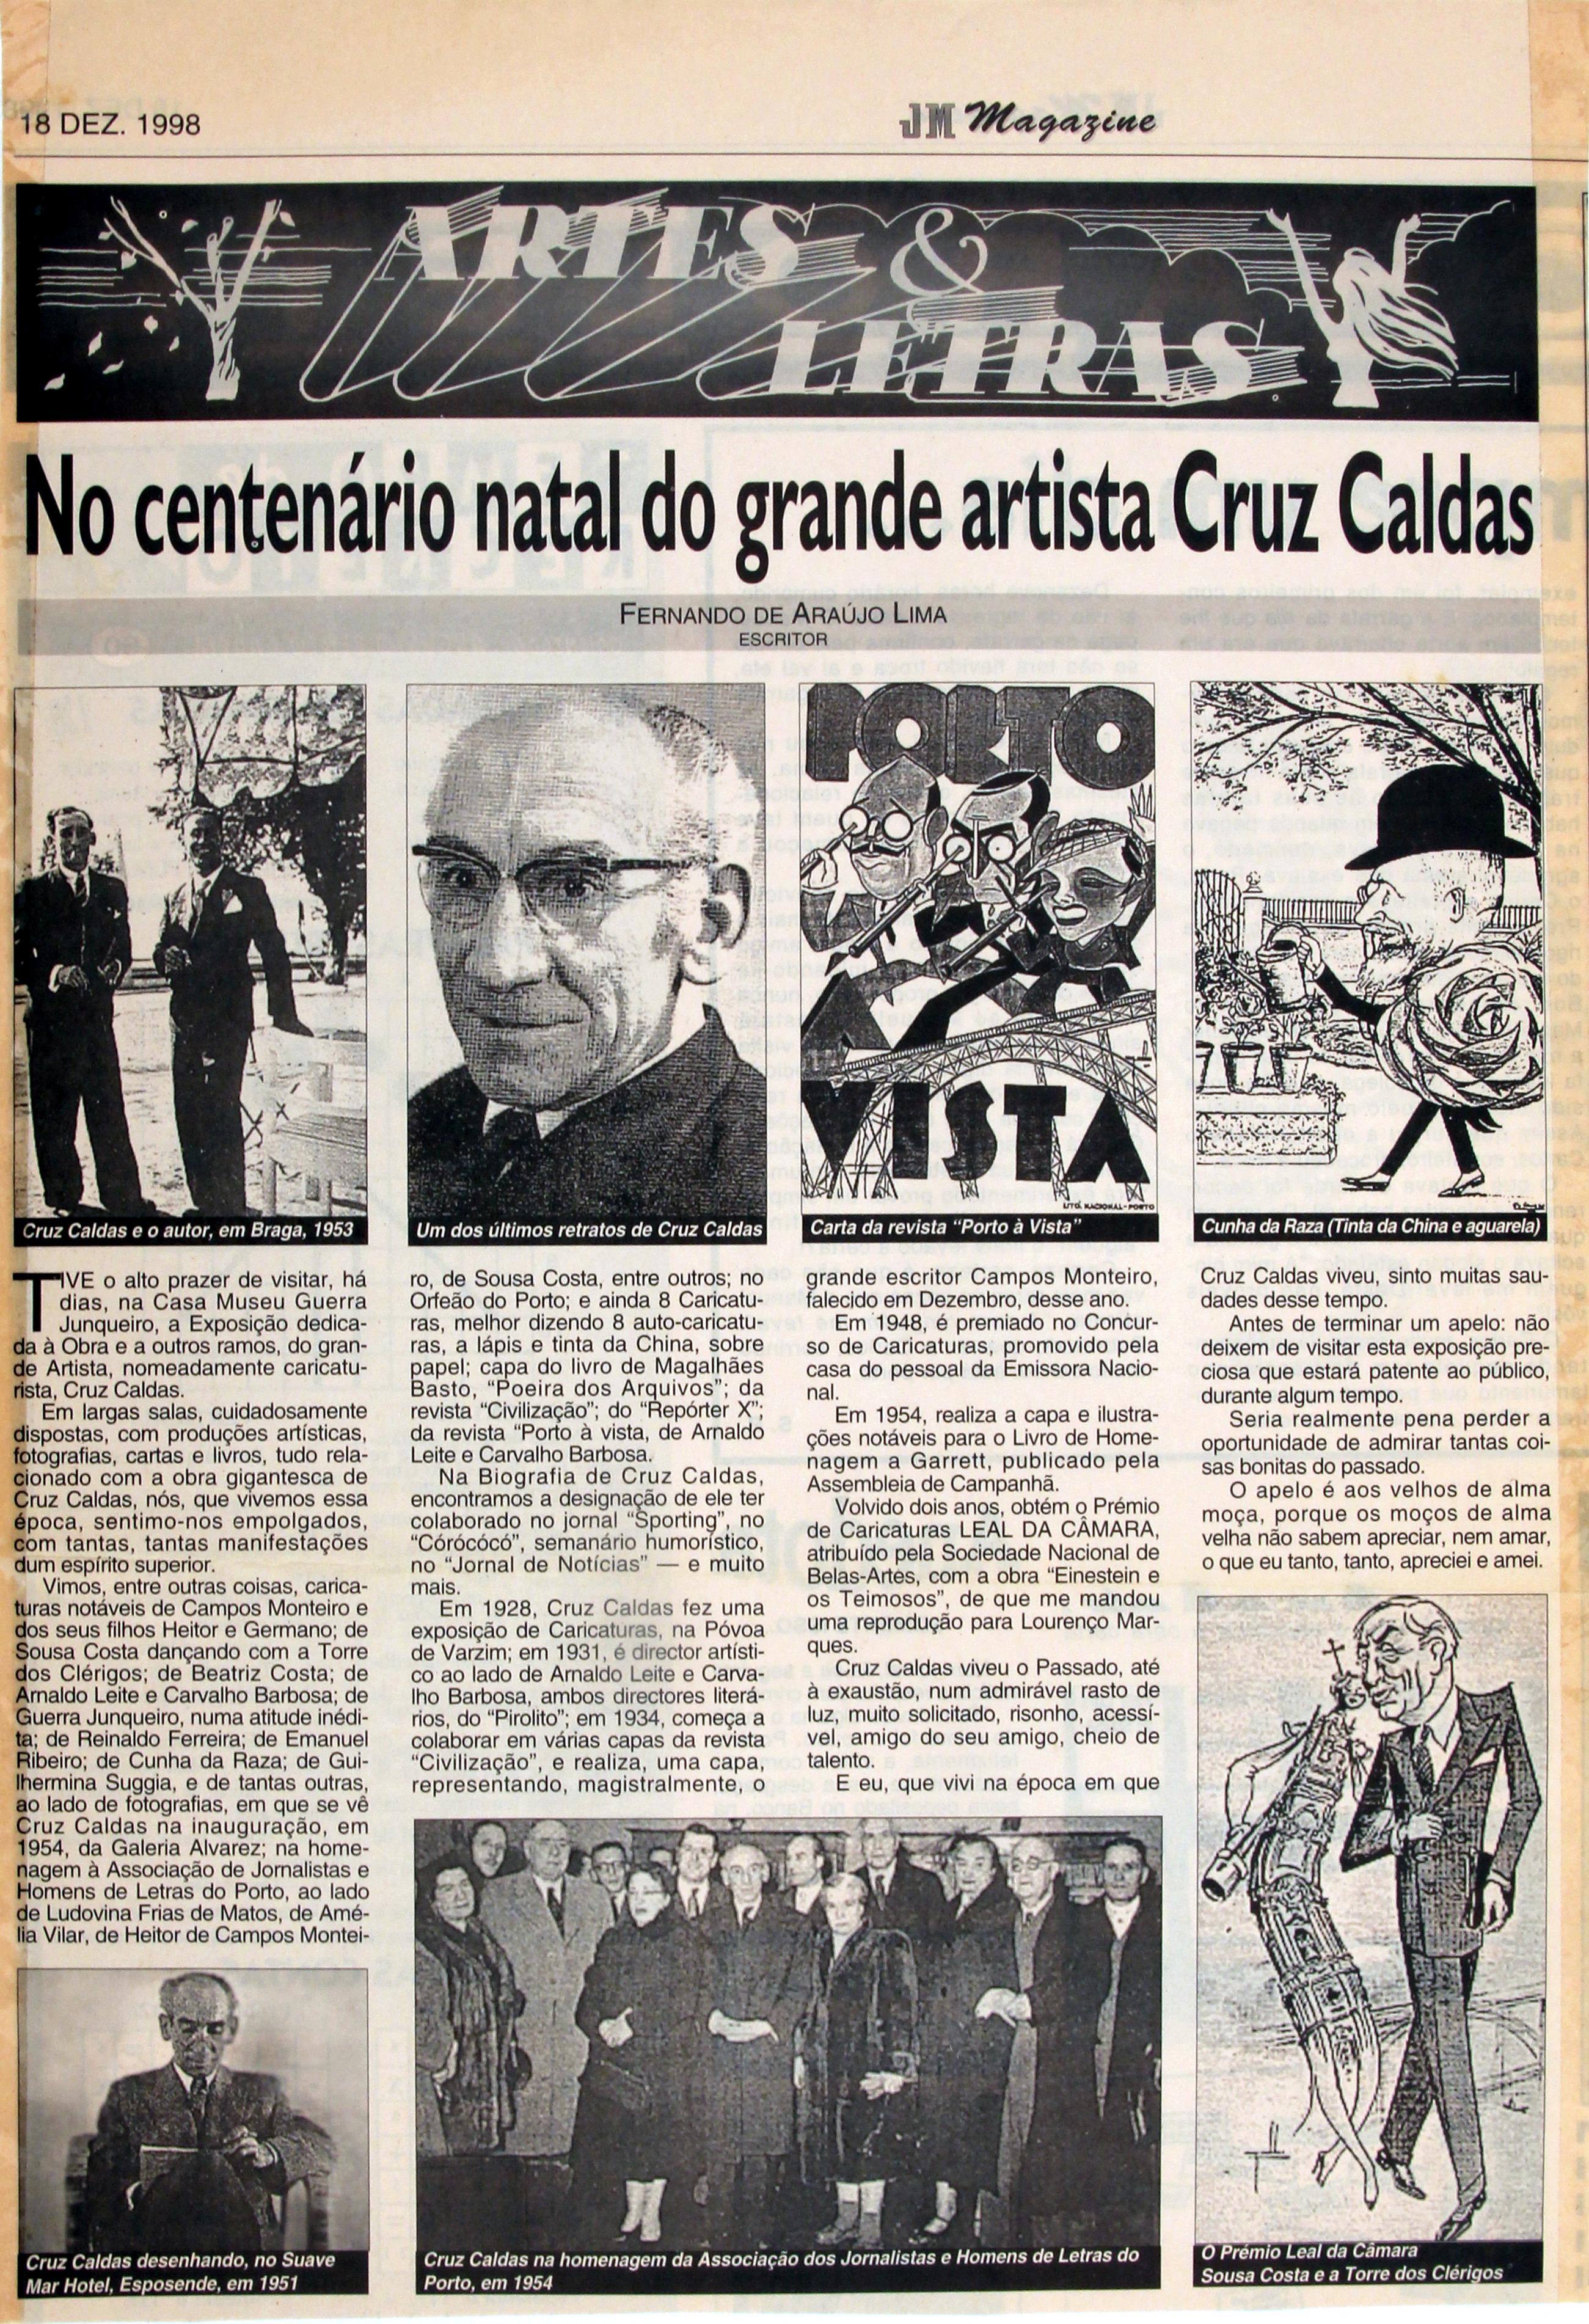 3ª Exposição "Documental" póstuma : «Cruz Caldas : Caricaturista e Ilustrador» : «JN Magazine» : artes e letras : no centenário natal do grande artista Cruz Caldas